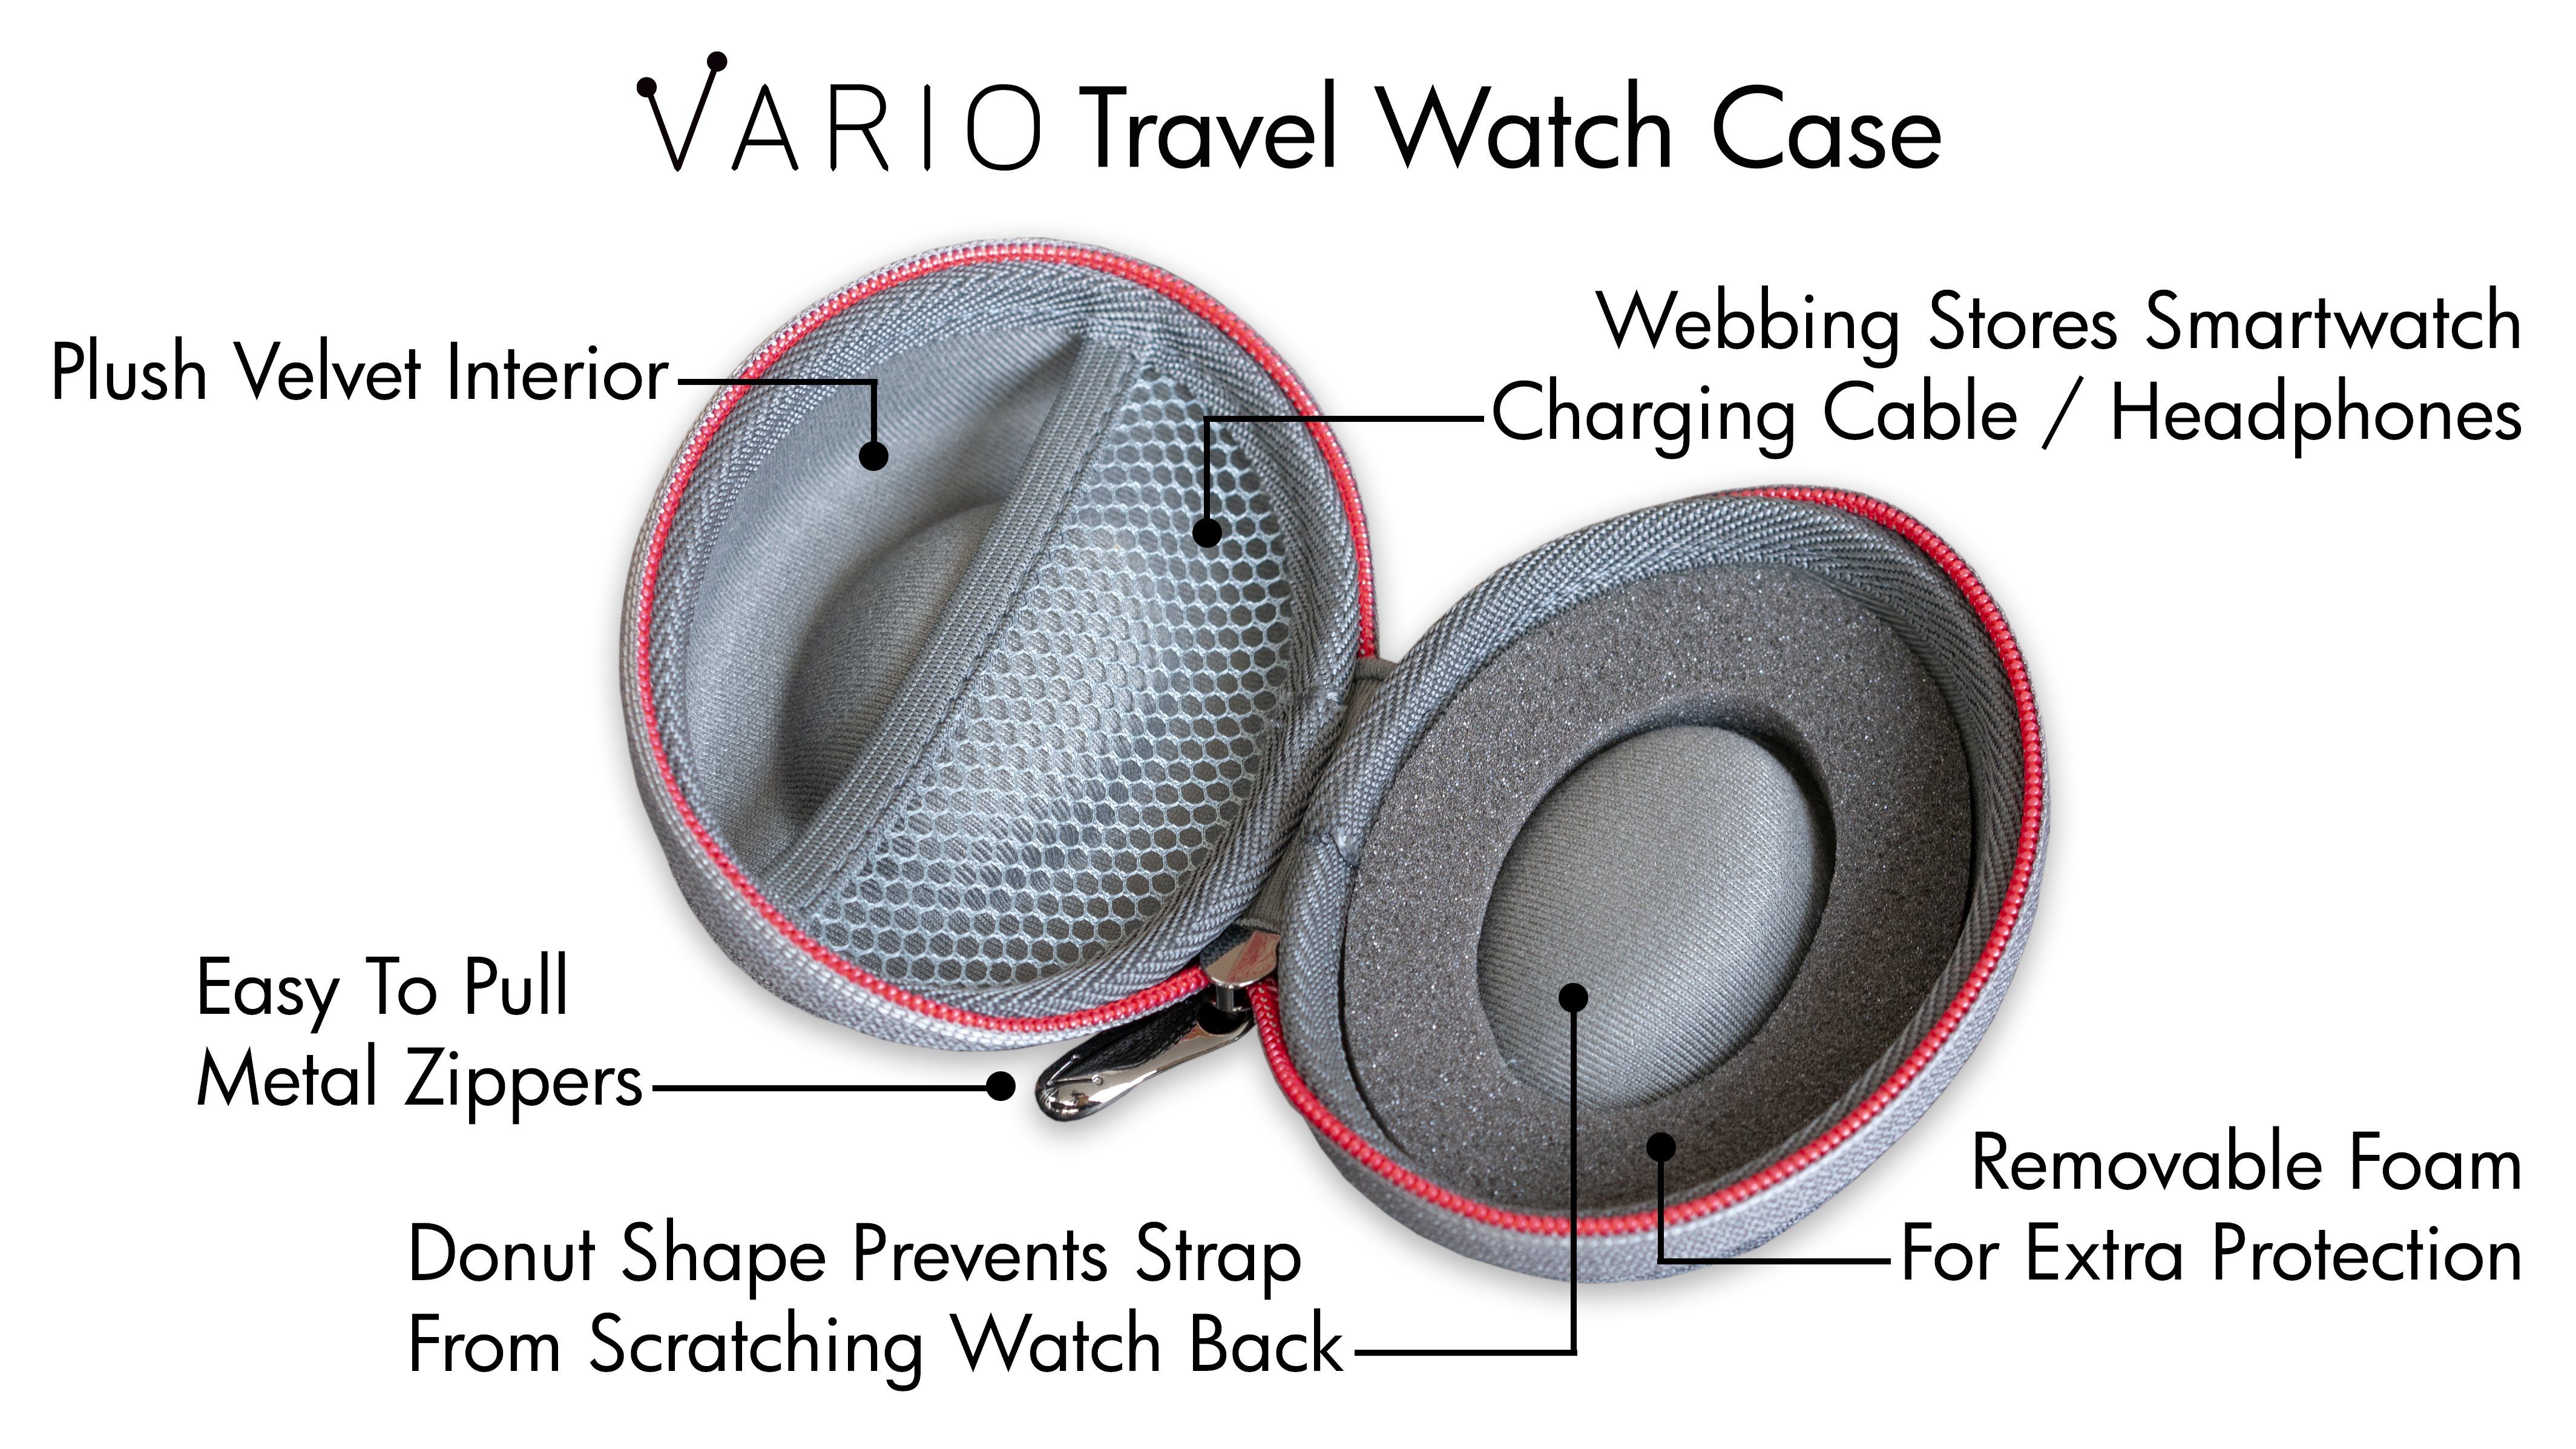 vario travel watch case benefits